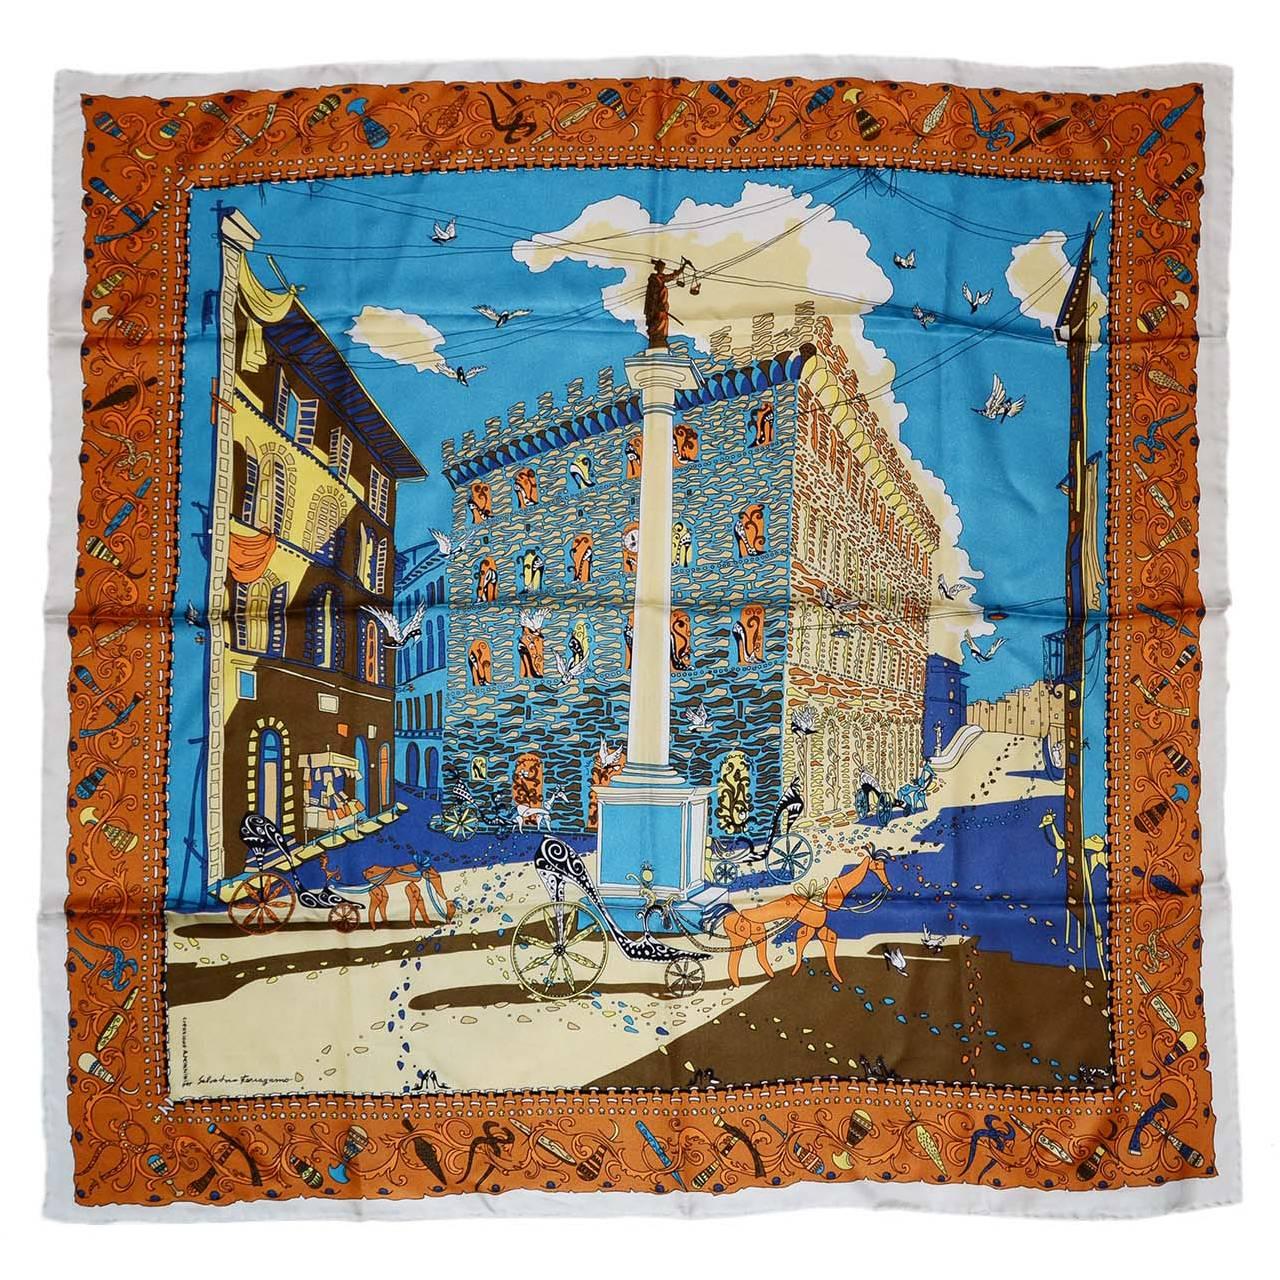 Salvatore Ferragamo Multi-Colored Printed Silk Scarf